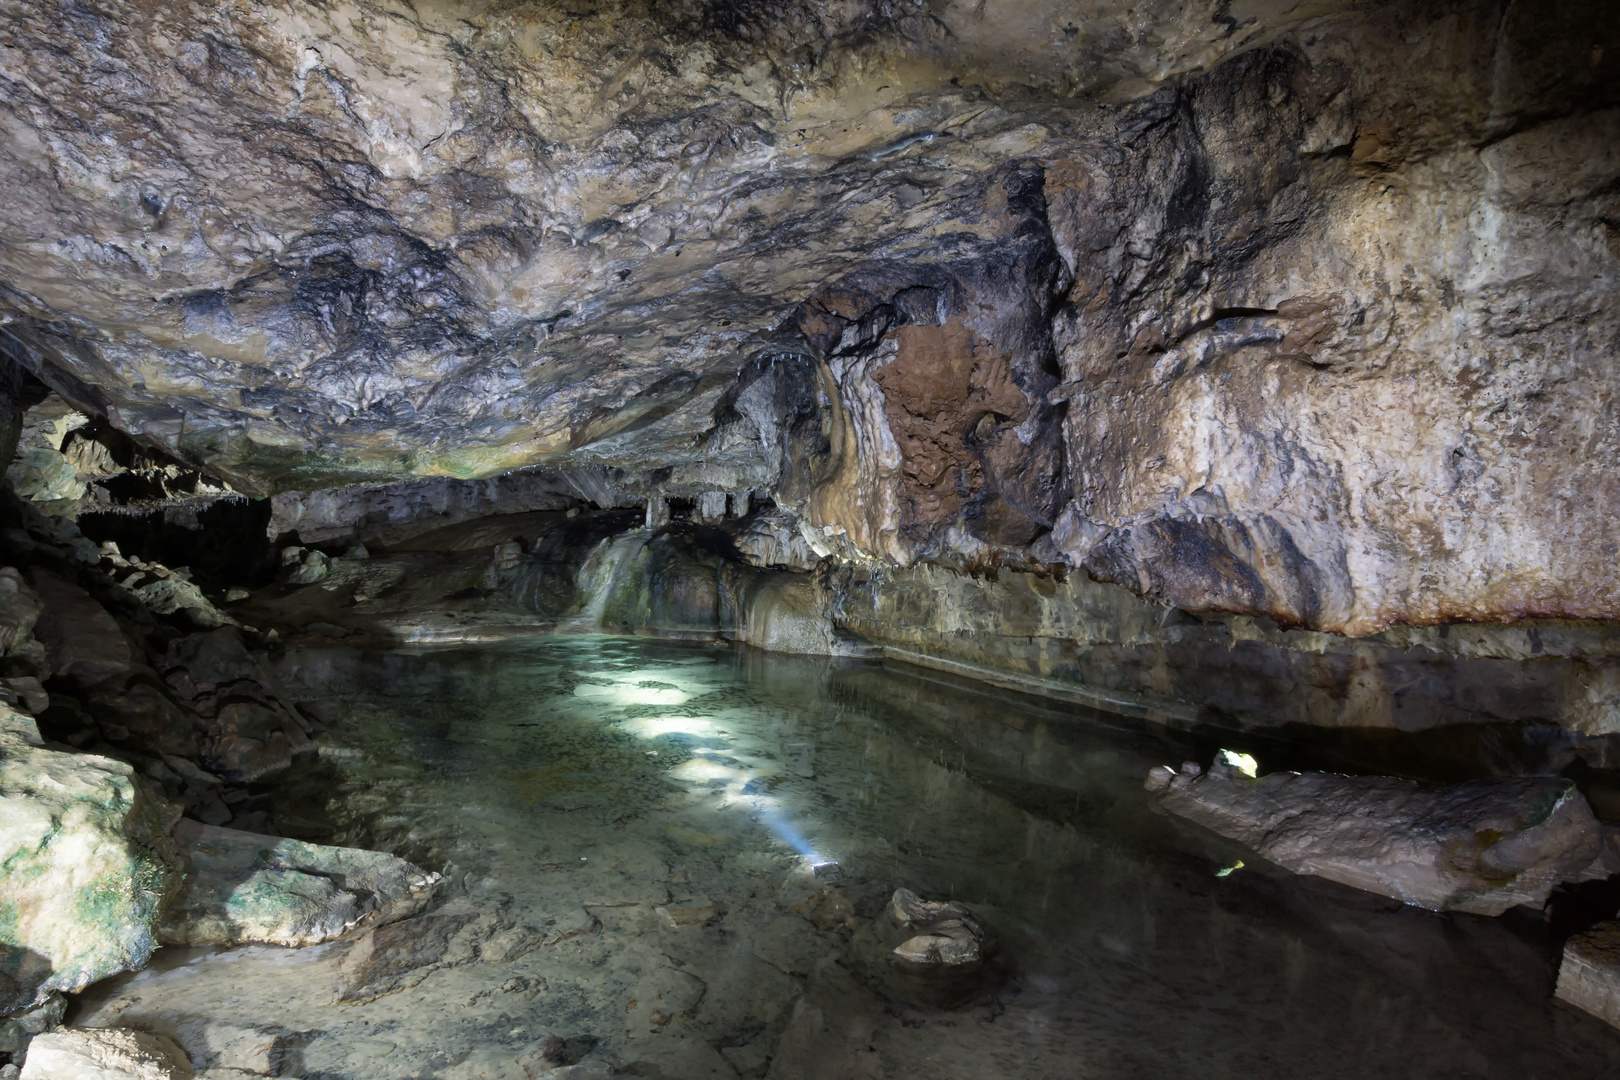 Tropfsteinhöhle in Südbaden Bild 2